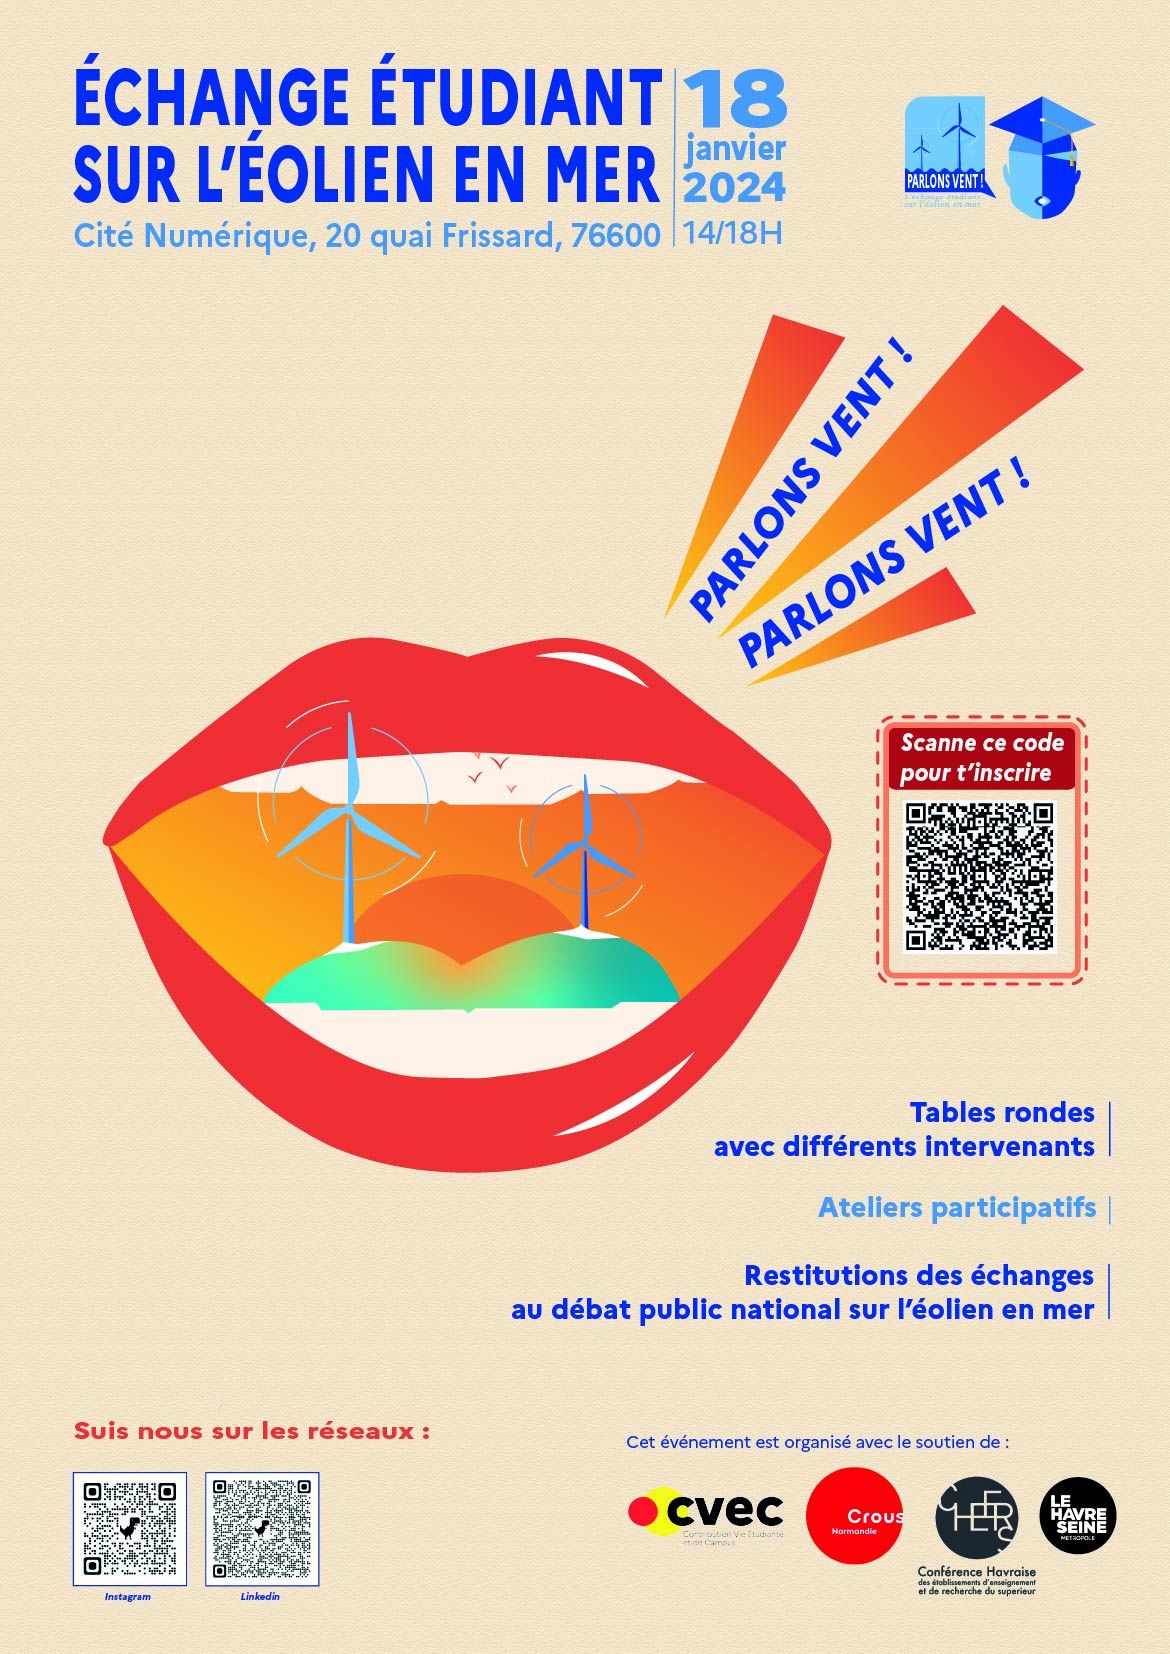 Affiche du projet parlons-vent : échange étudiant sur l'éolien en mer le 18 janvier 2023 à la Cité Numérique au Havre